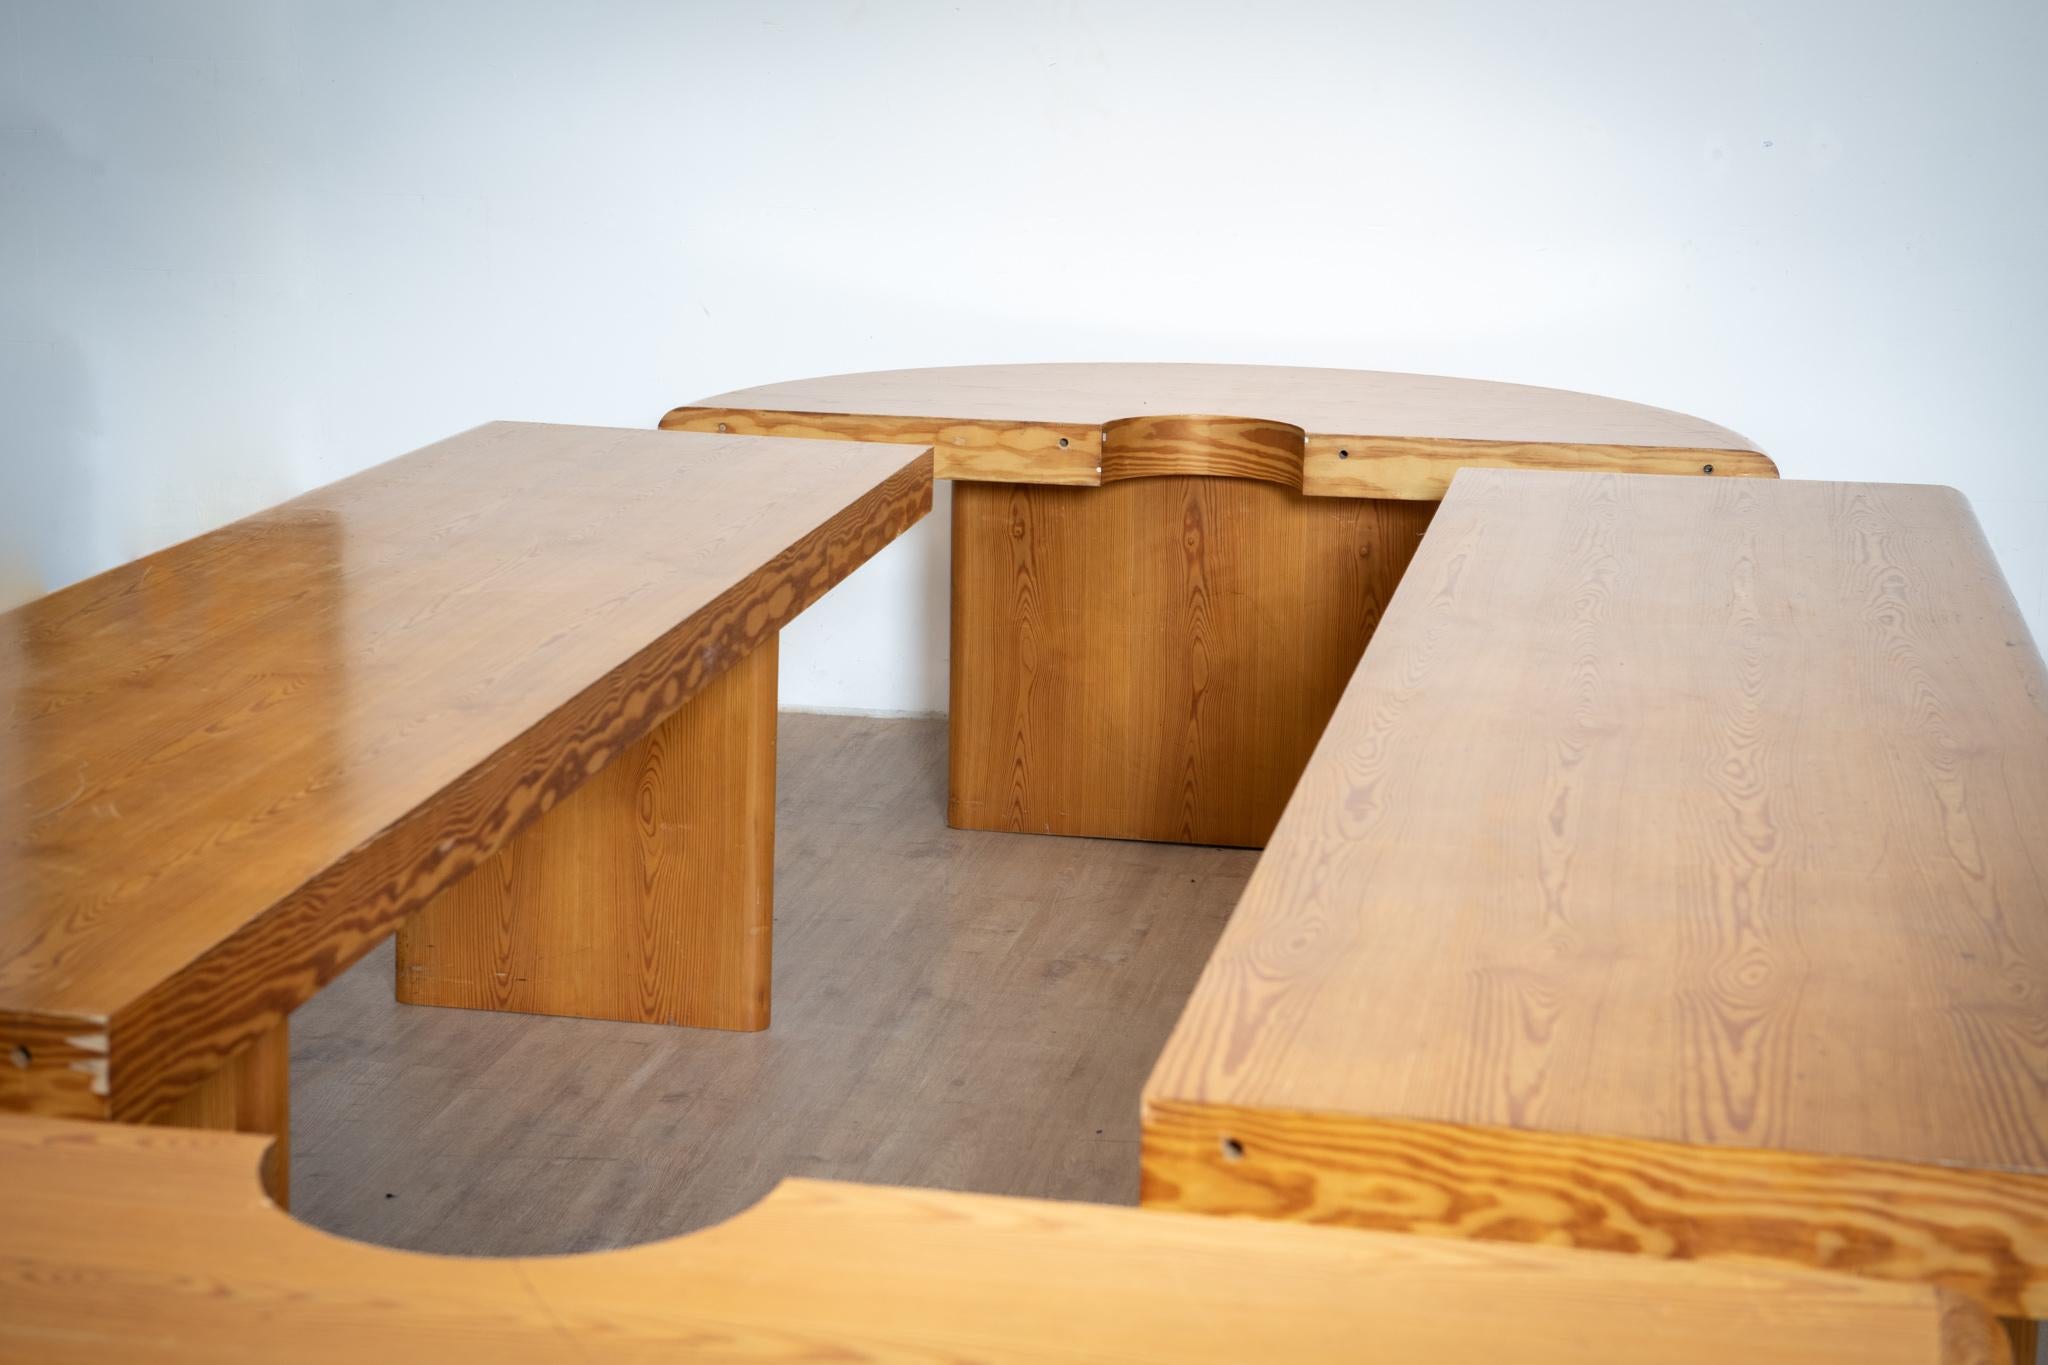 Wichtiger Konferenztisch aus Kiefernholz von Rainer Daumiller für Hirtshals Savværk møbler aus den 1980er Jahren. Der Tisch besteht aus 2 rechteckigen Tischen und 2 halbmondförmigen Konsolen. Der Tisch stammt aus dem Sitzungssaal eines Mailänder